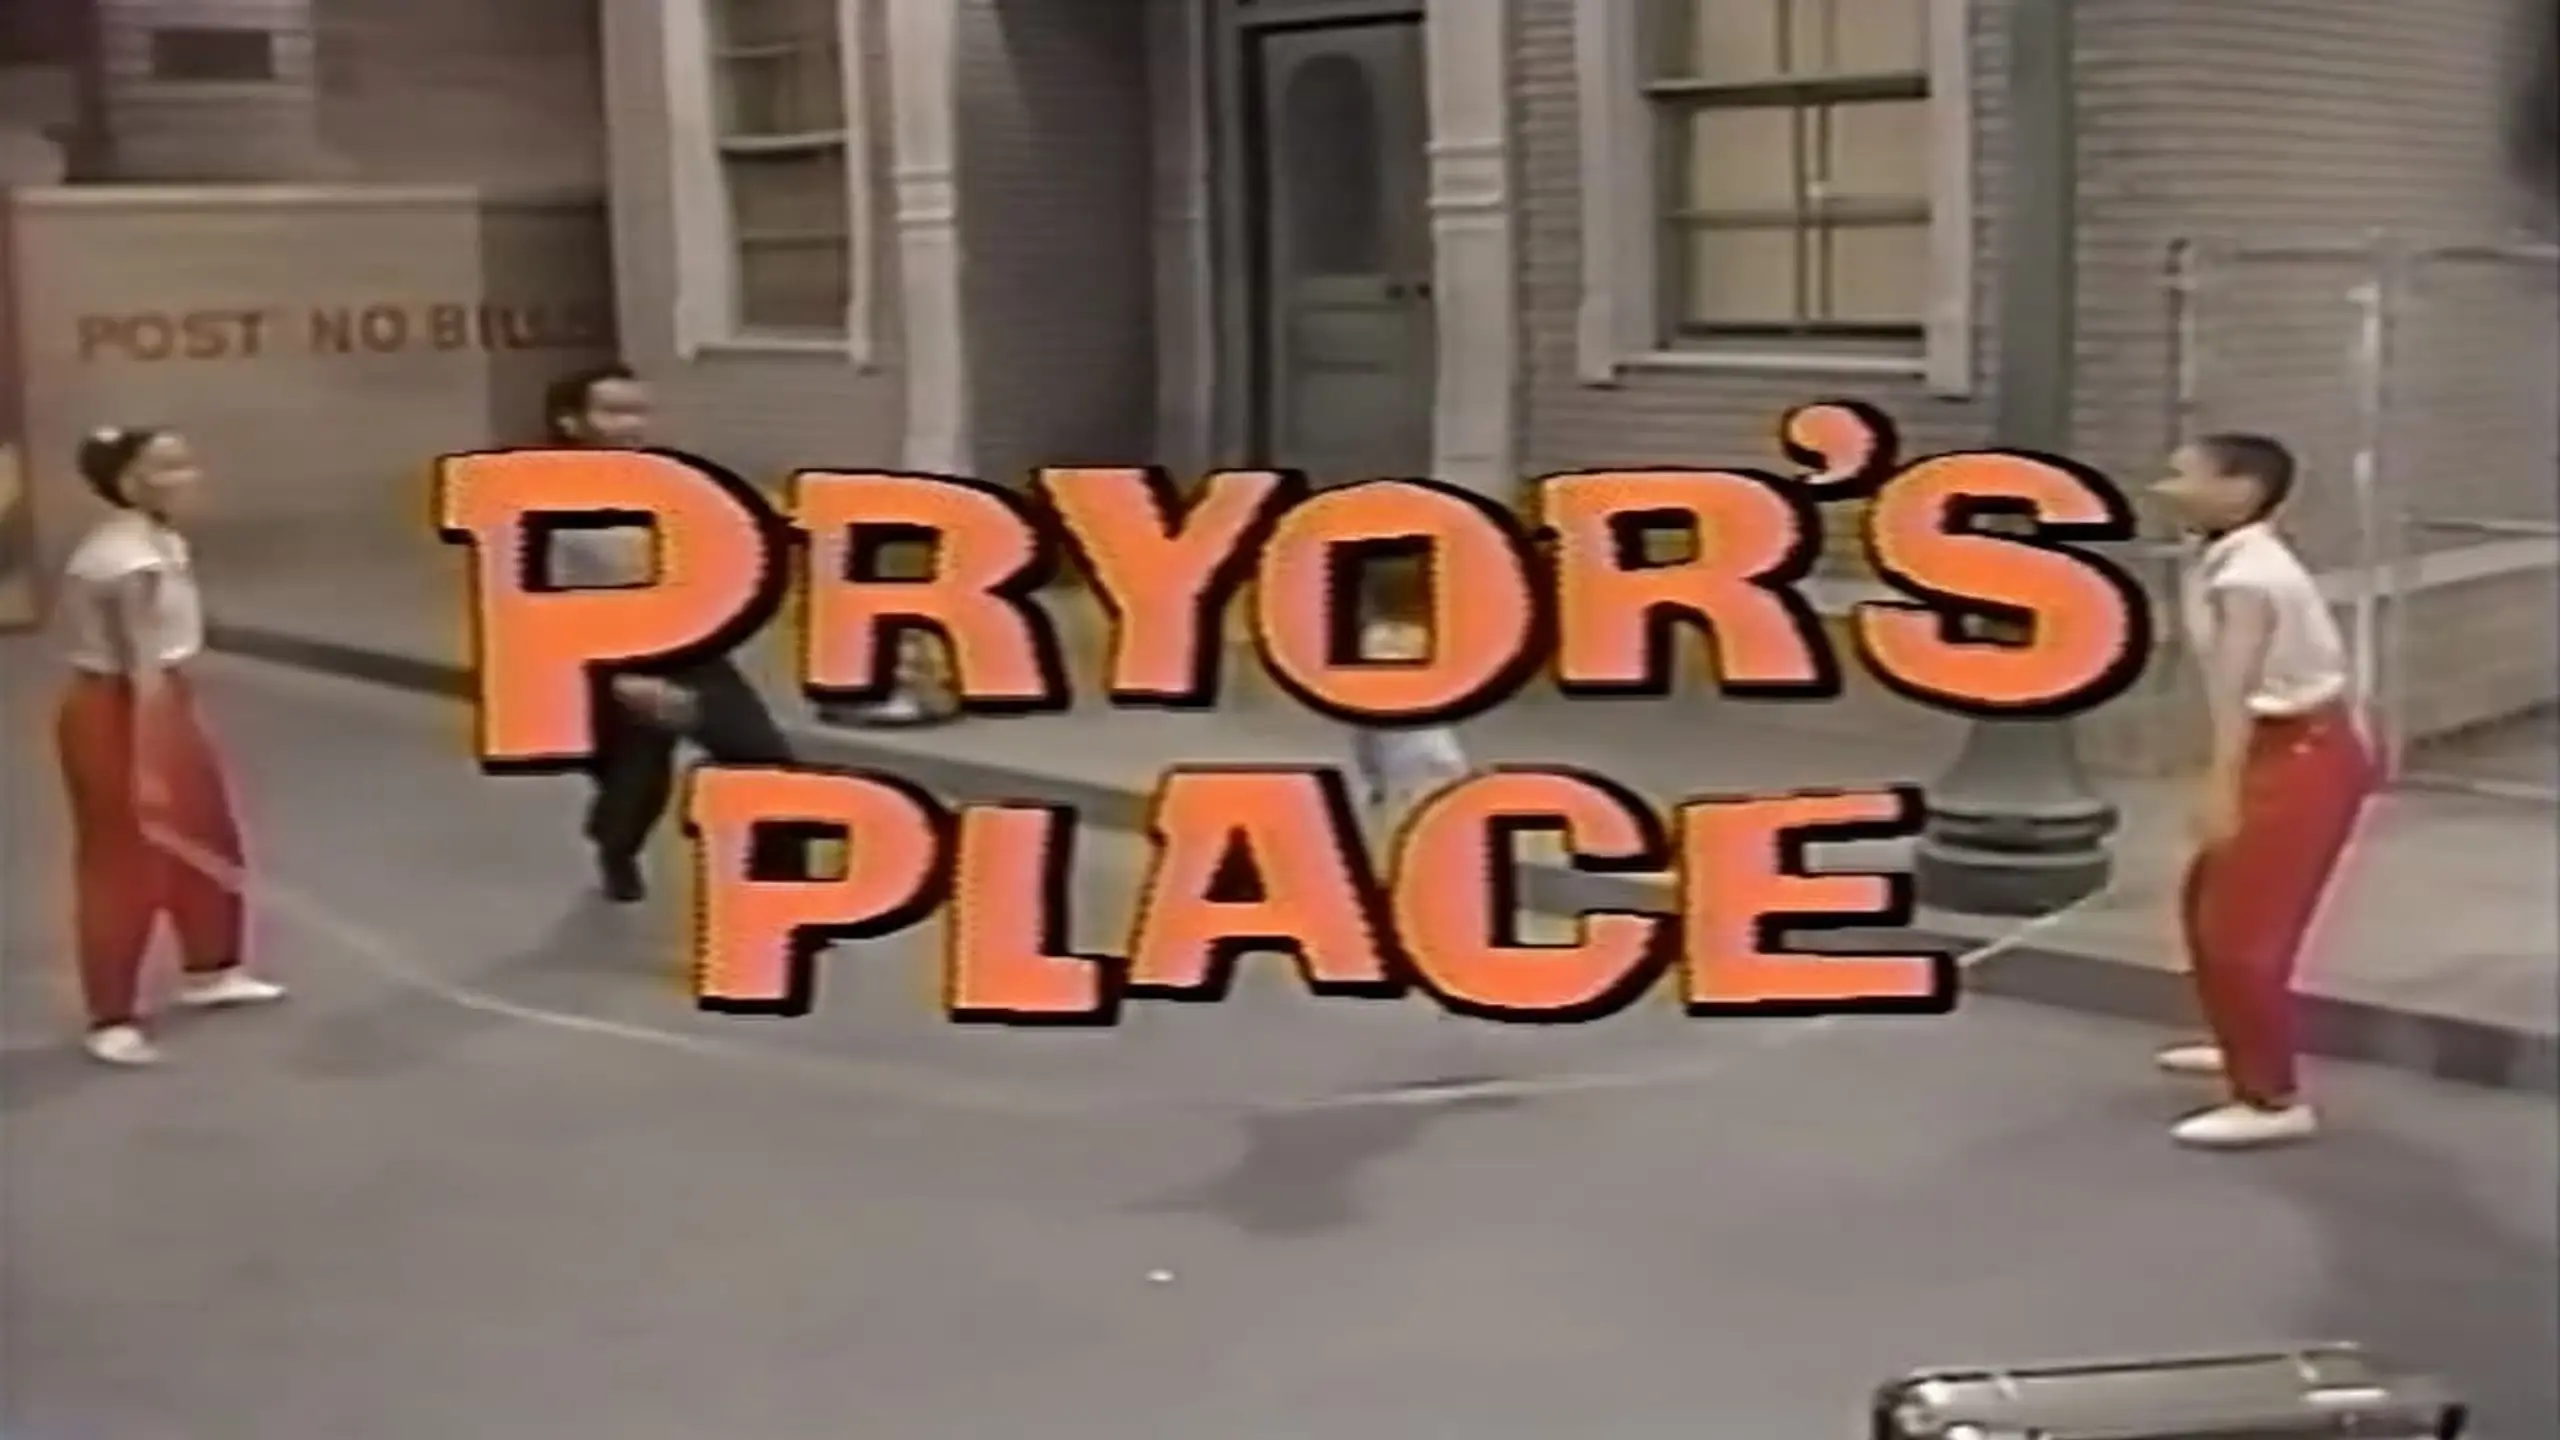 Pryor's Place